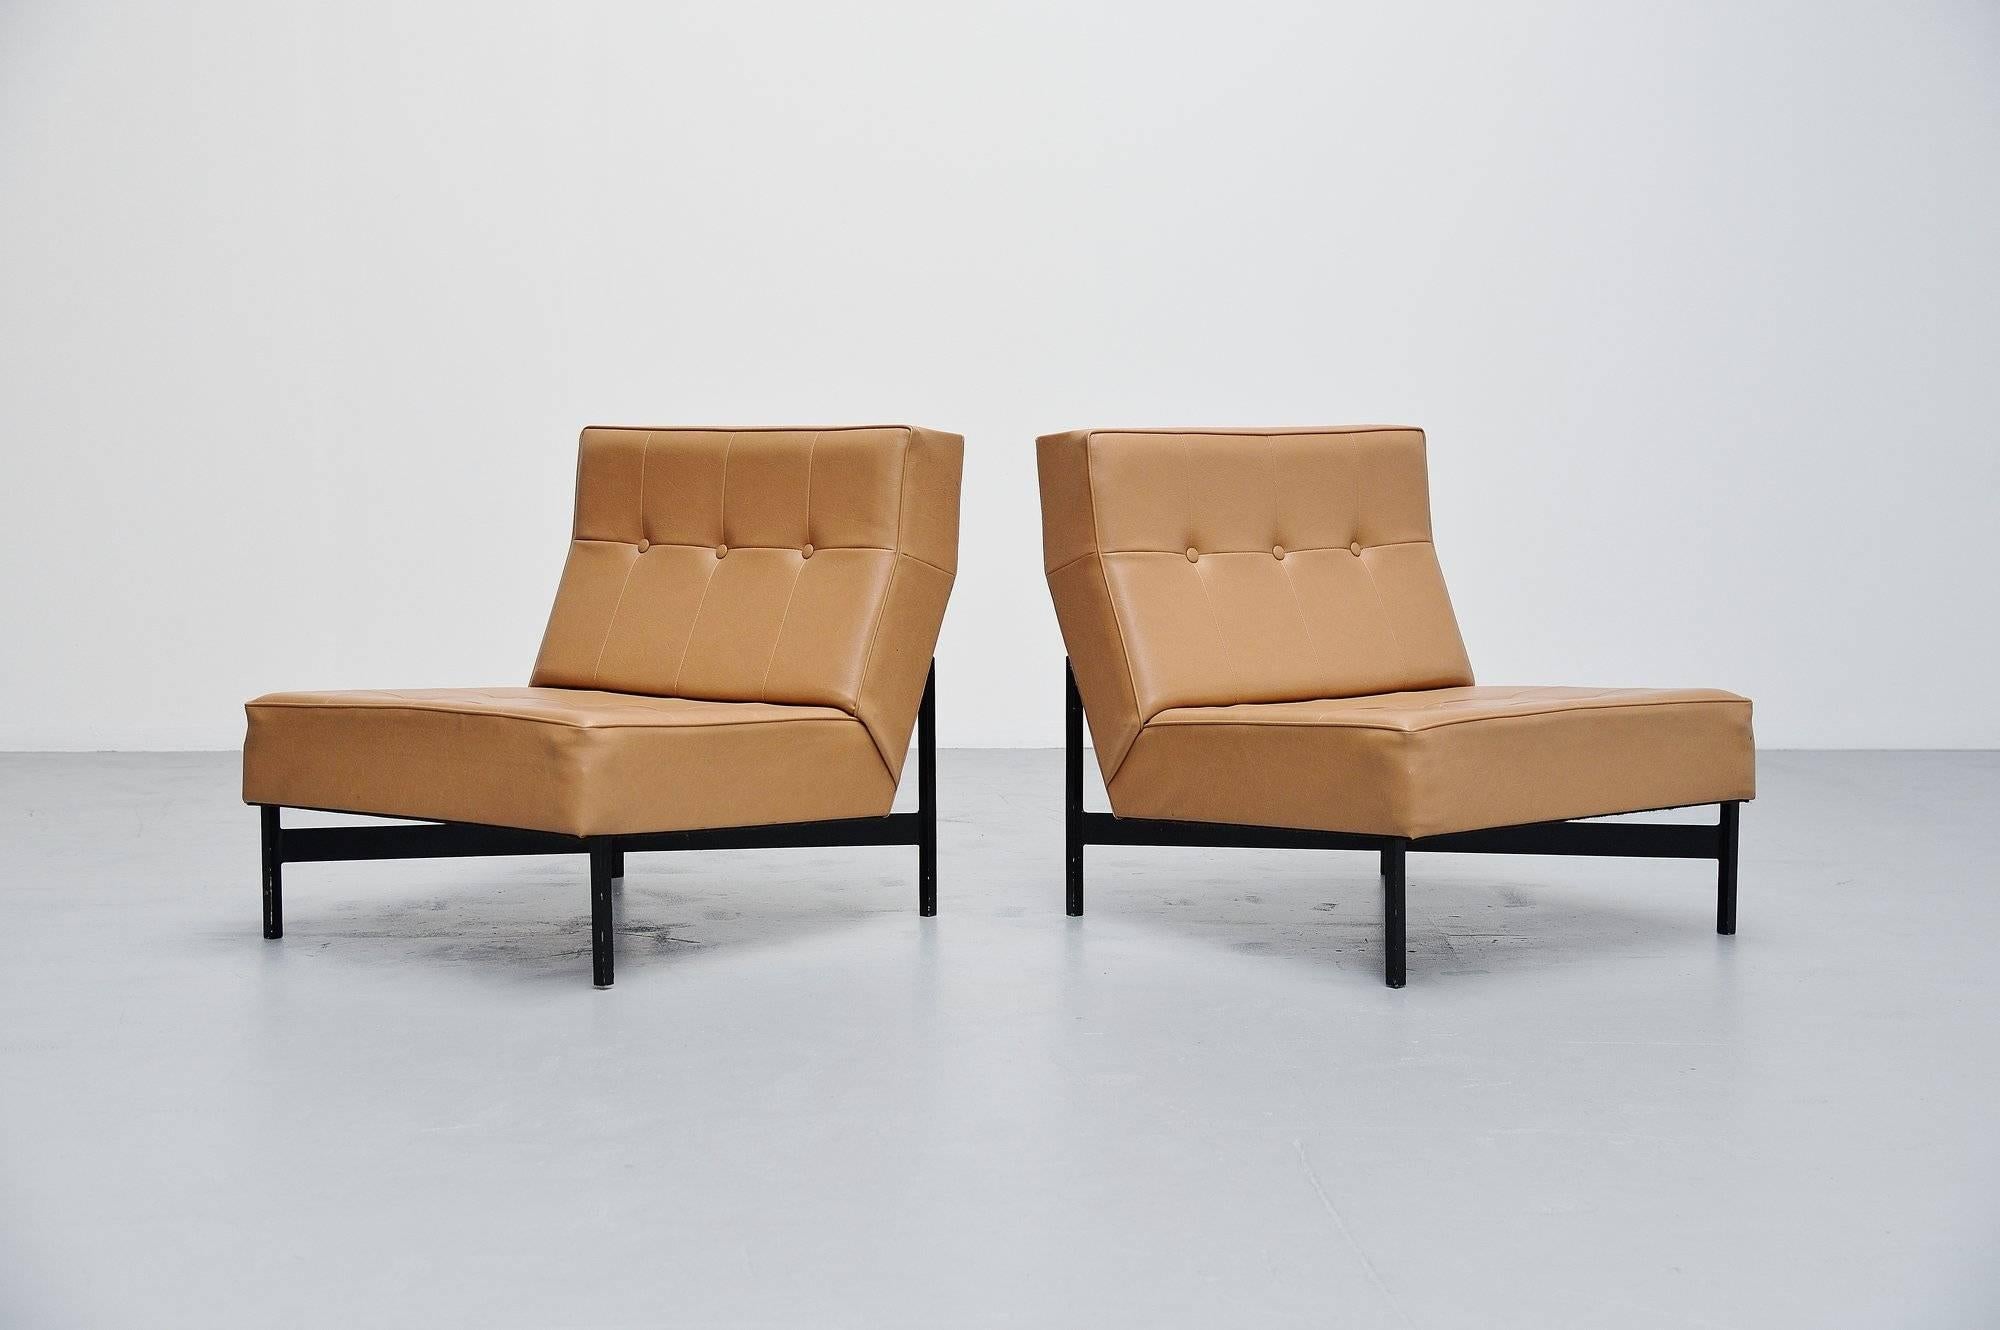 Dutch Wim Den Boon Modernist Lounge Chairs, Holland, 1965